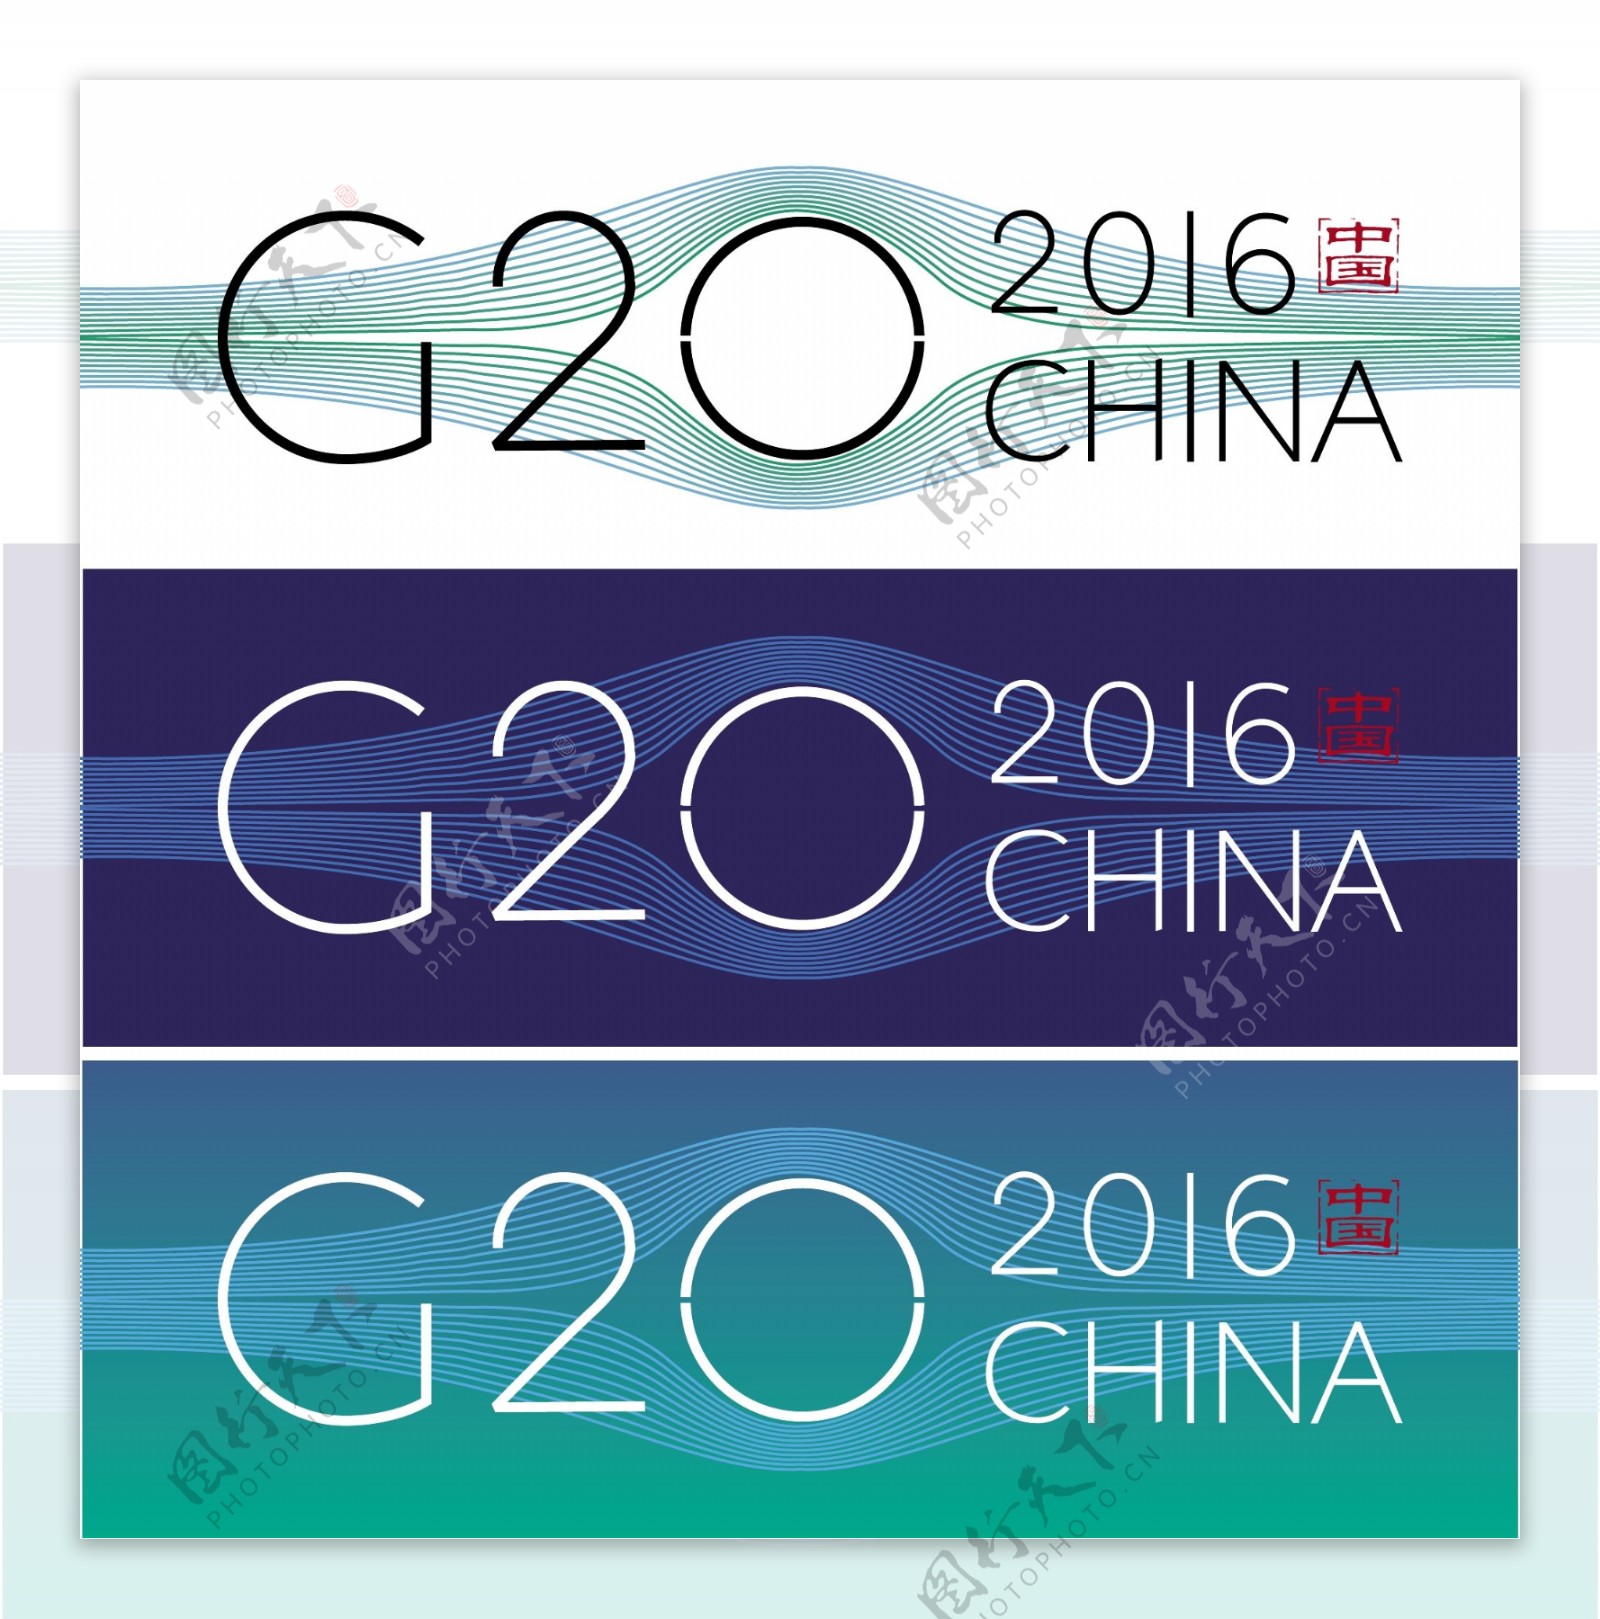 2016杭州G20峰会LOGO图片